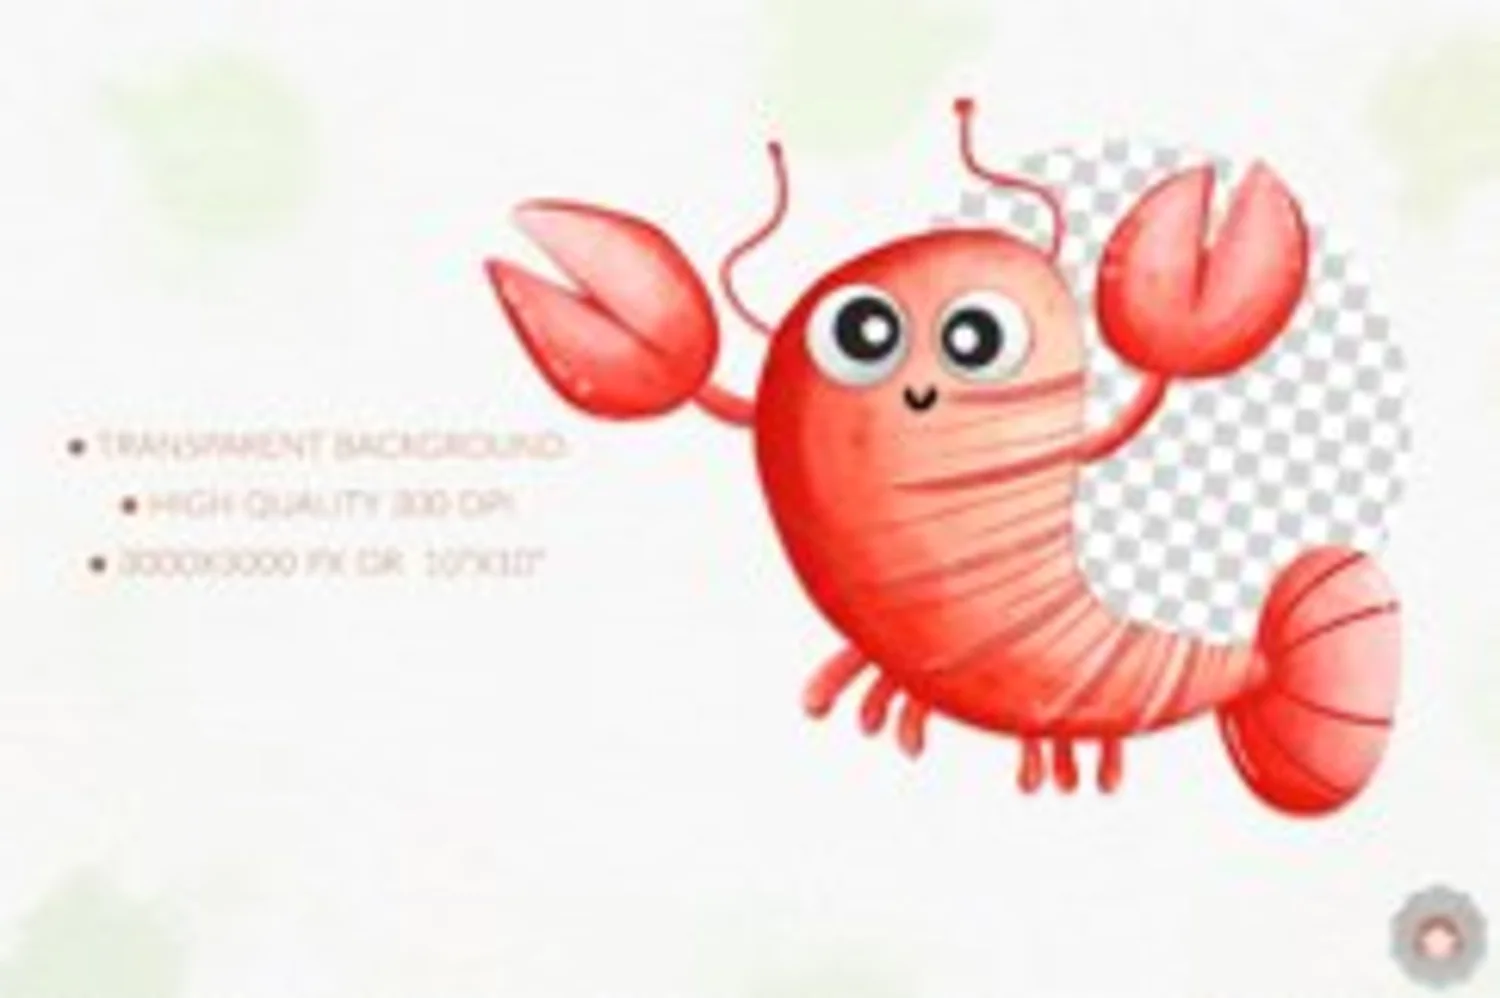 5588 可爱有趣的海底世界动植物主题水彩插画素材